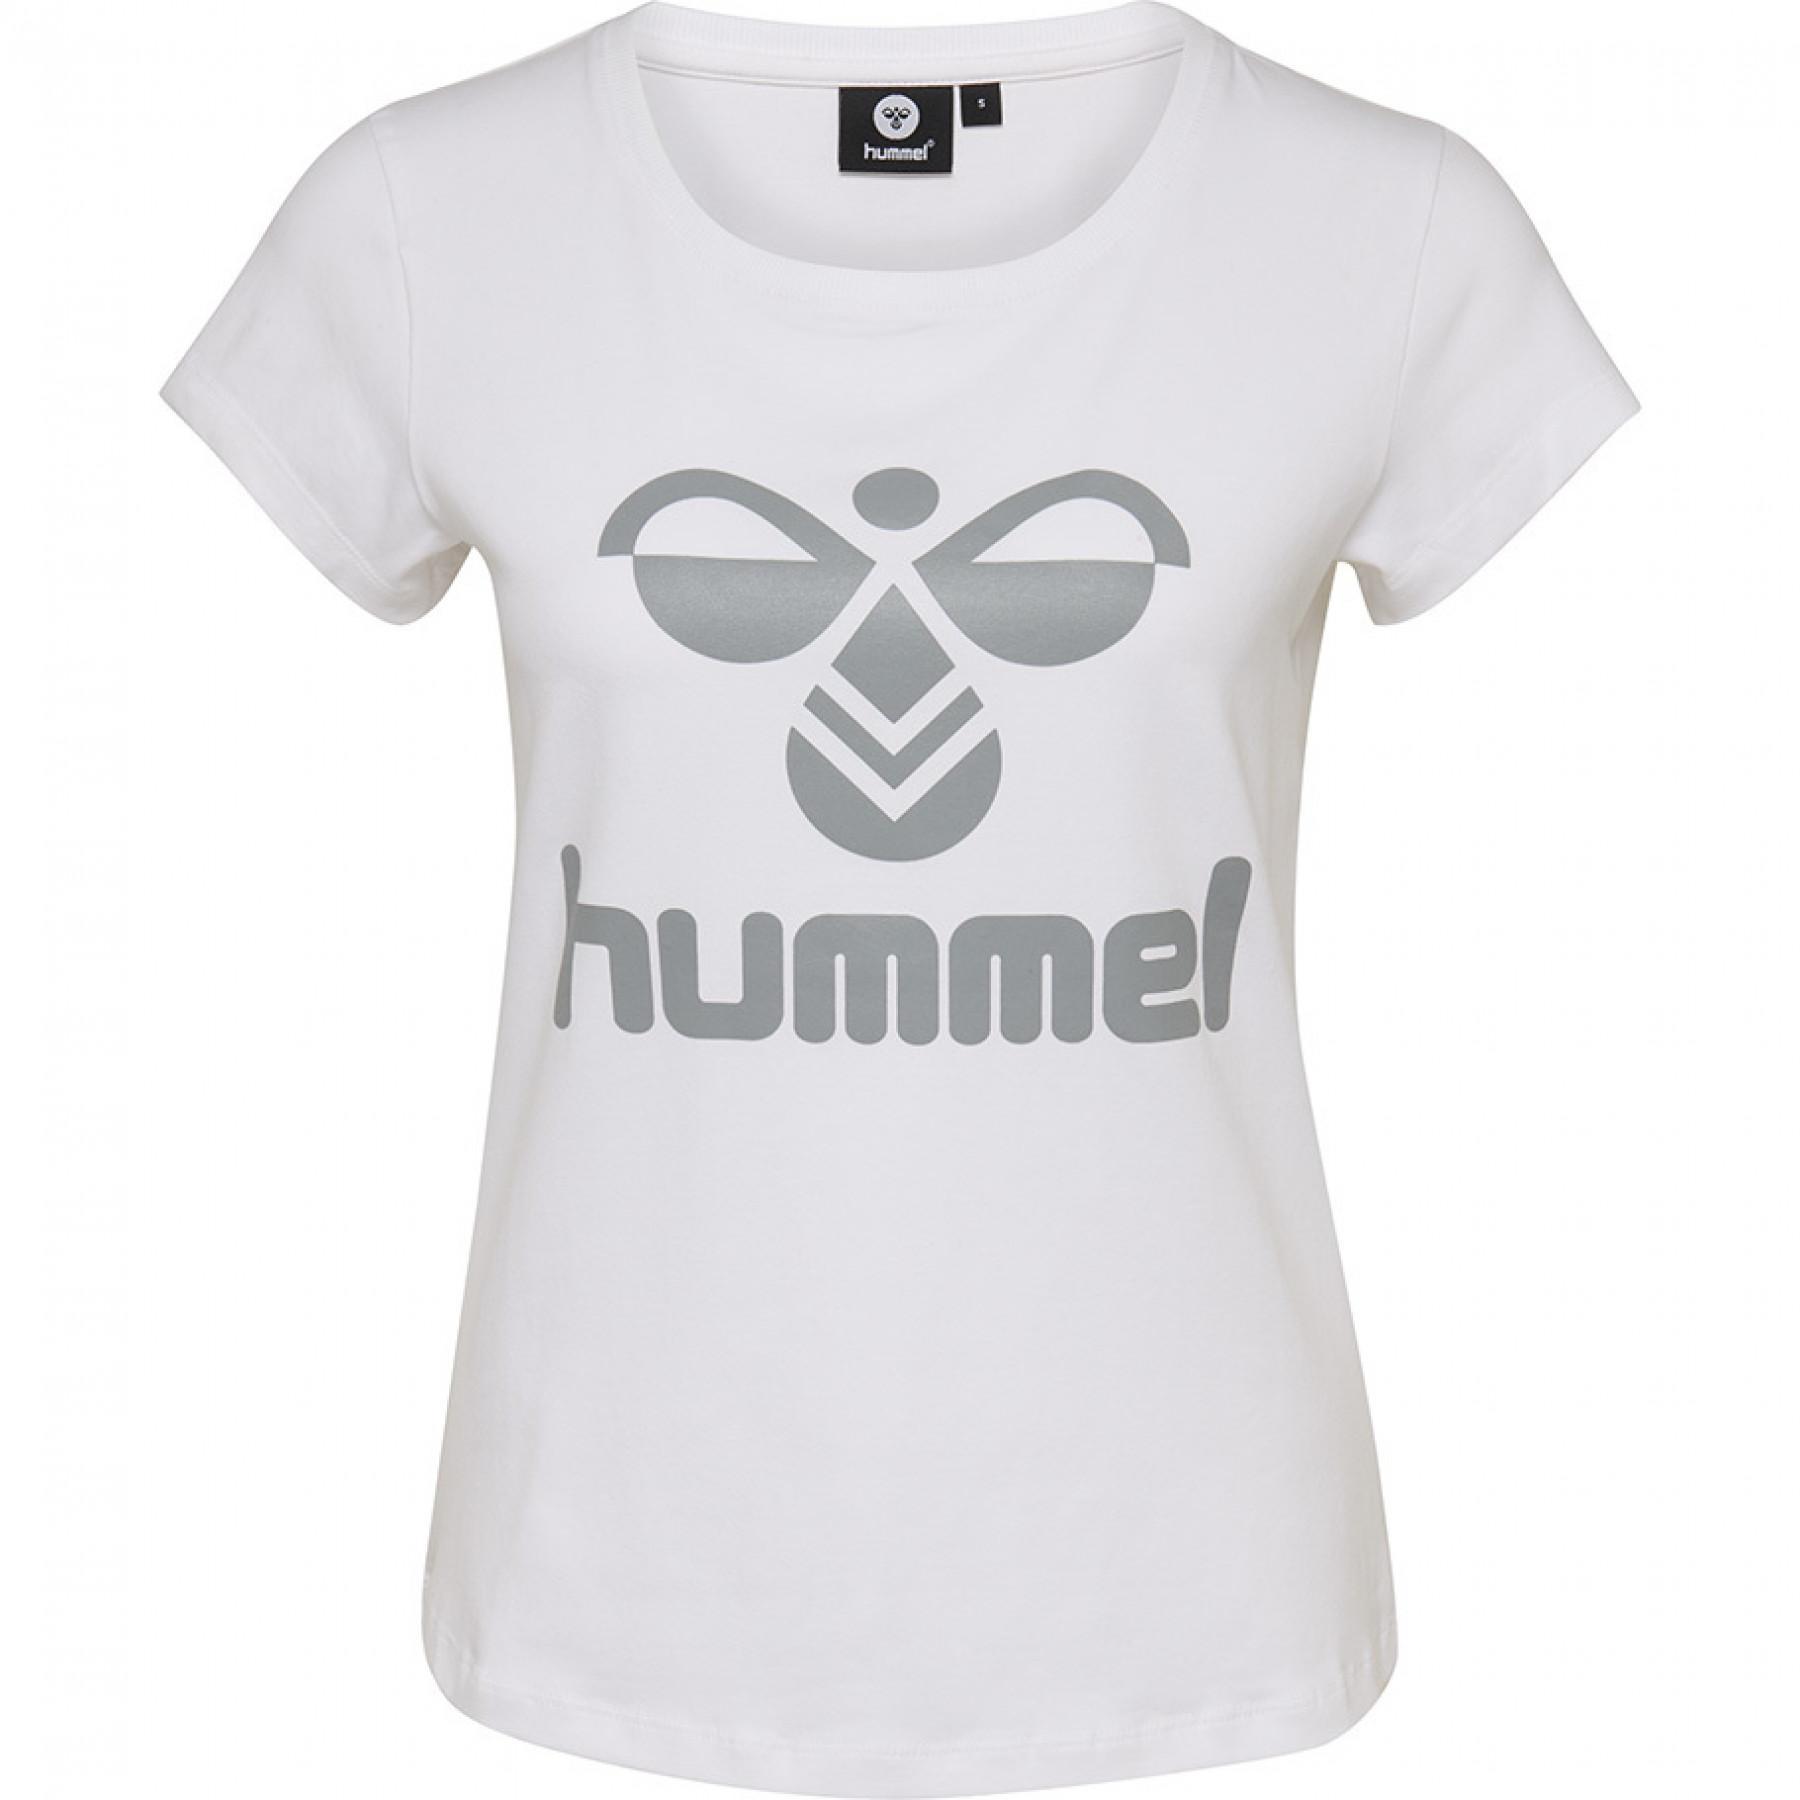 Camiseta feminina Hummel jane white grey